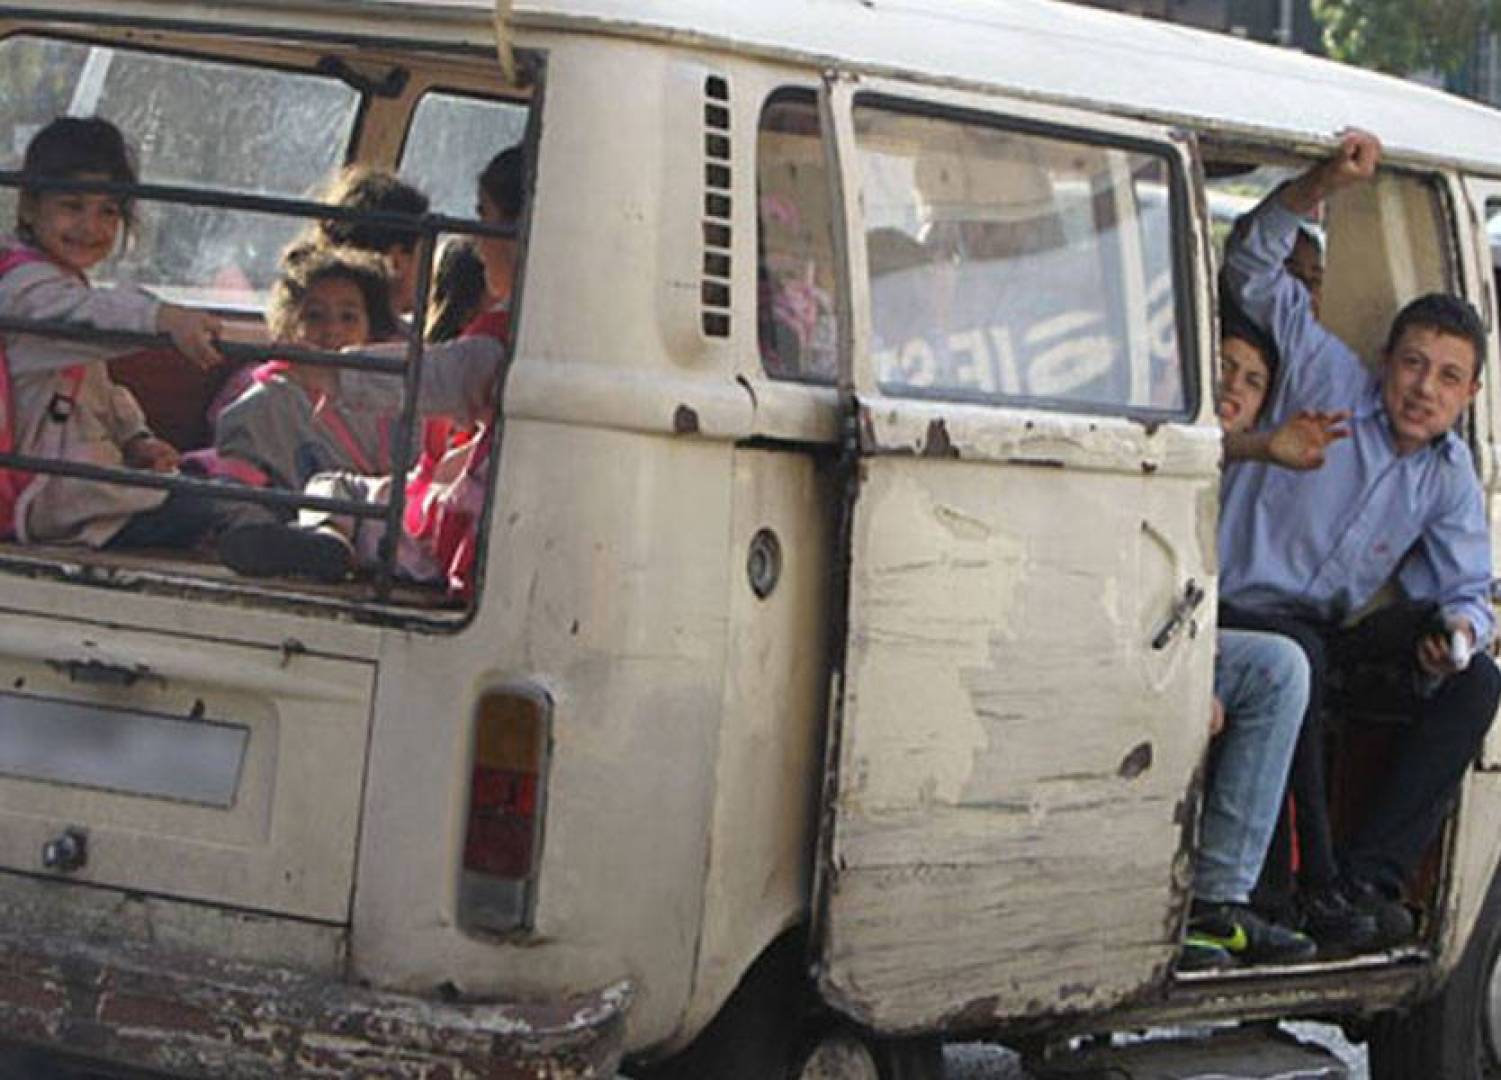 طفل سقط من فان لنقل الطلاب في مشمش - عكار واصيب بجروح في وجهه